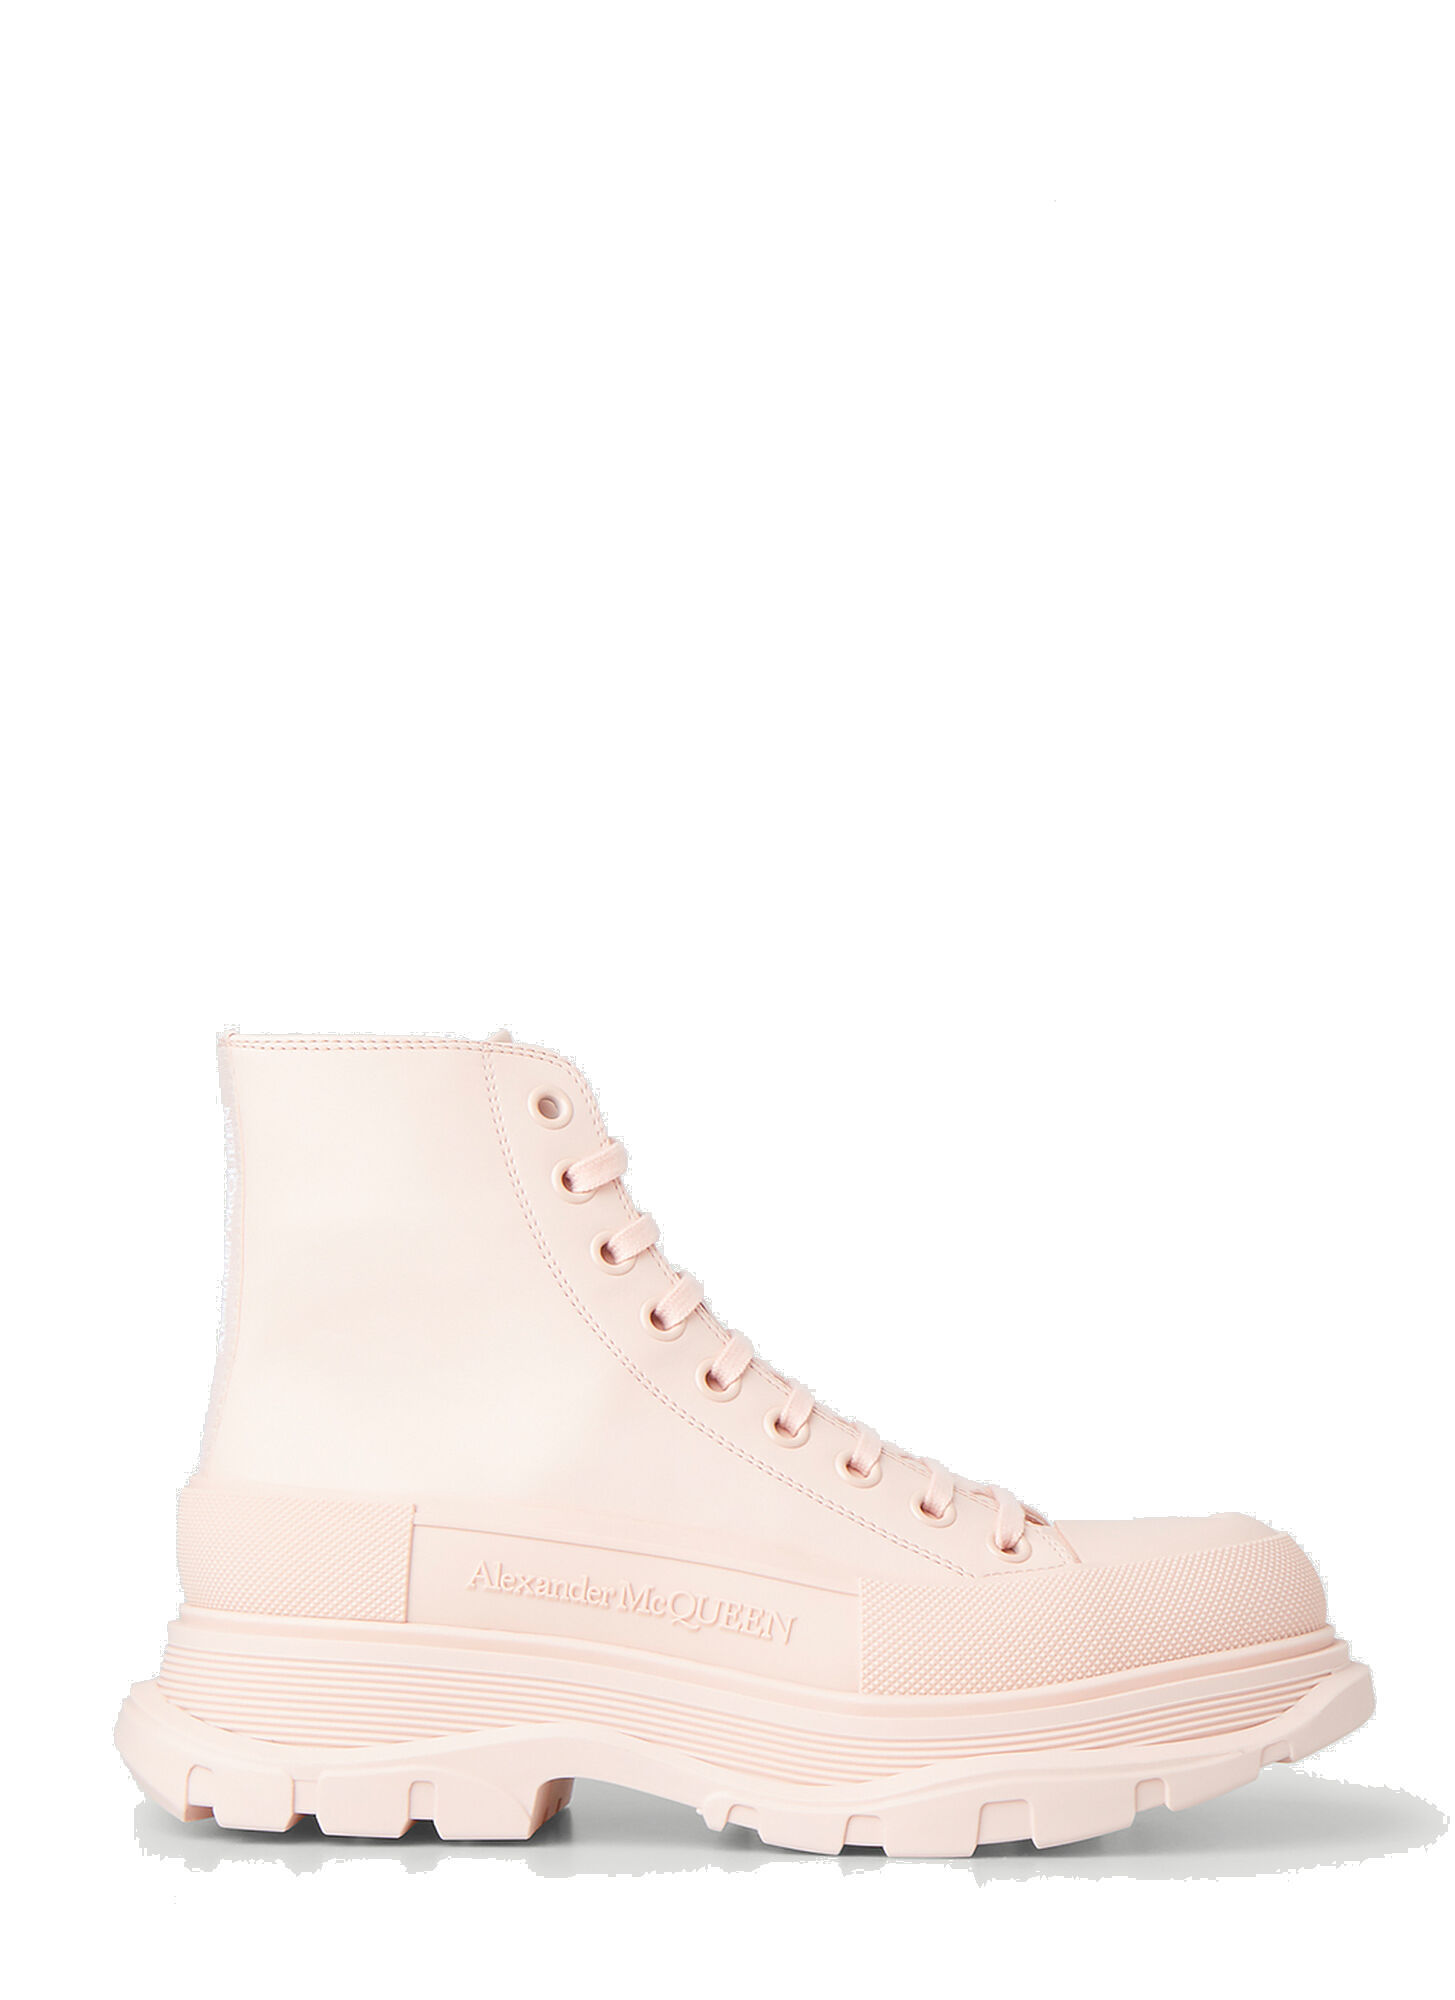 Tread Slick Ankle Boots in Pink Alexander McQueen